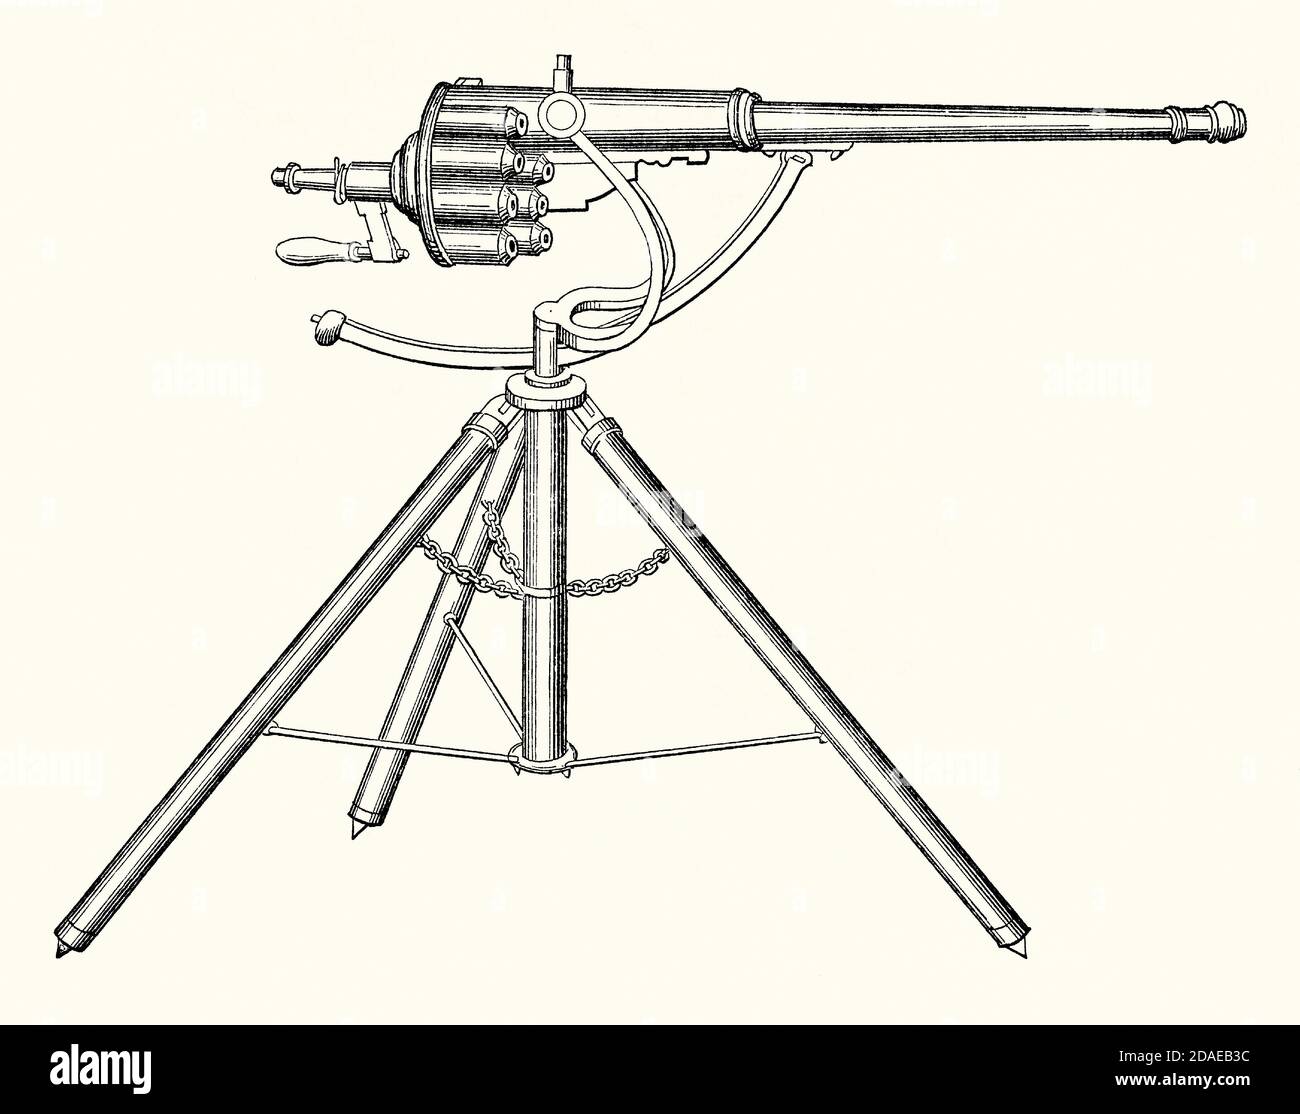 Eine alte Gravur einer Puckle Pistole, die 1718 patentiert wurde. Es ist aus einem viktorianischen Maschinenbaubuch der 1880er Jahre. Die Puckle-Waffe (auch bekannt als die Verteidigung Waffe) war ein primitiver Flintlock-Revolver von James Puckle (1667–1724) erfunden. ‘mwar eine der ersten Waffen, die als „Maschine“ bezeichnet wurde. Es wurde nie in irgendeiner Menge hergestellt oder während des Kampfes verwendet. Es handelt sich um eine auf einem Stativ montierte, einarbige Flintlock-Waffe, die mit einem manuell betätigten Drehzylinder ausgestattet ist. Puckle bewarb seine Hauptanwendung als Anti-Boarding-Kanone für Schiffe. Stockfoto